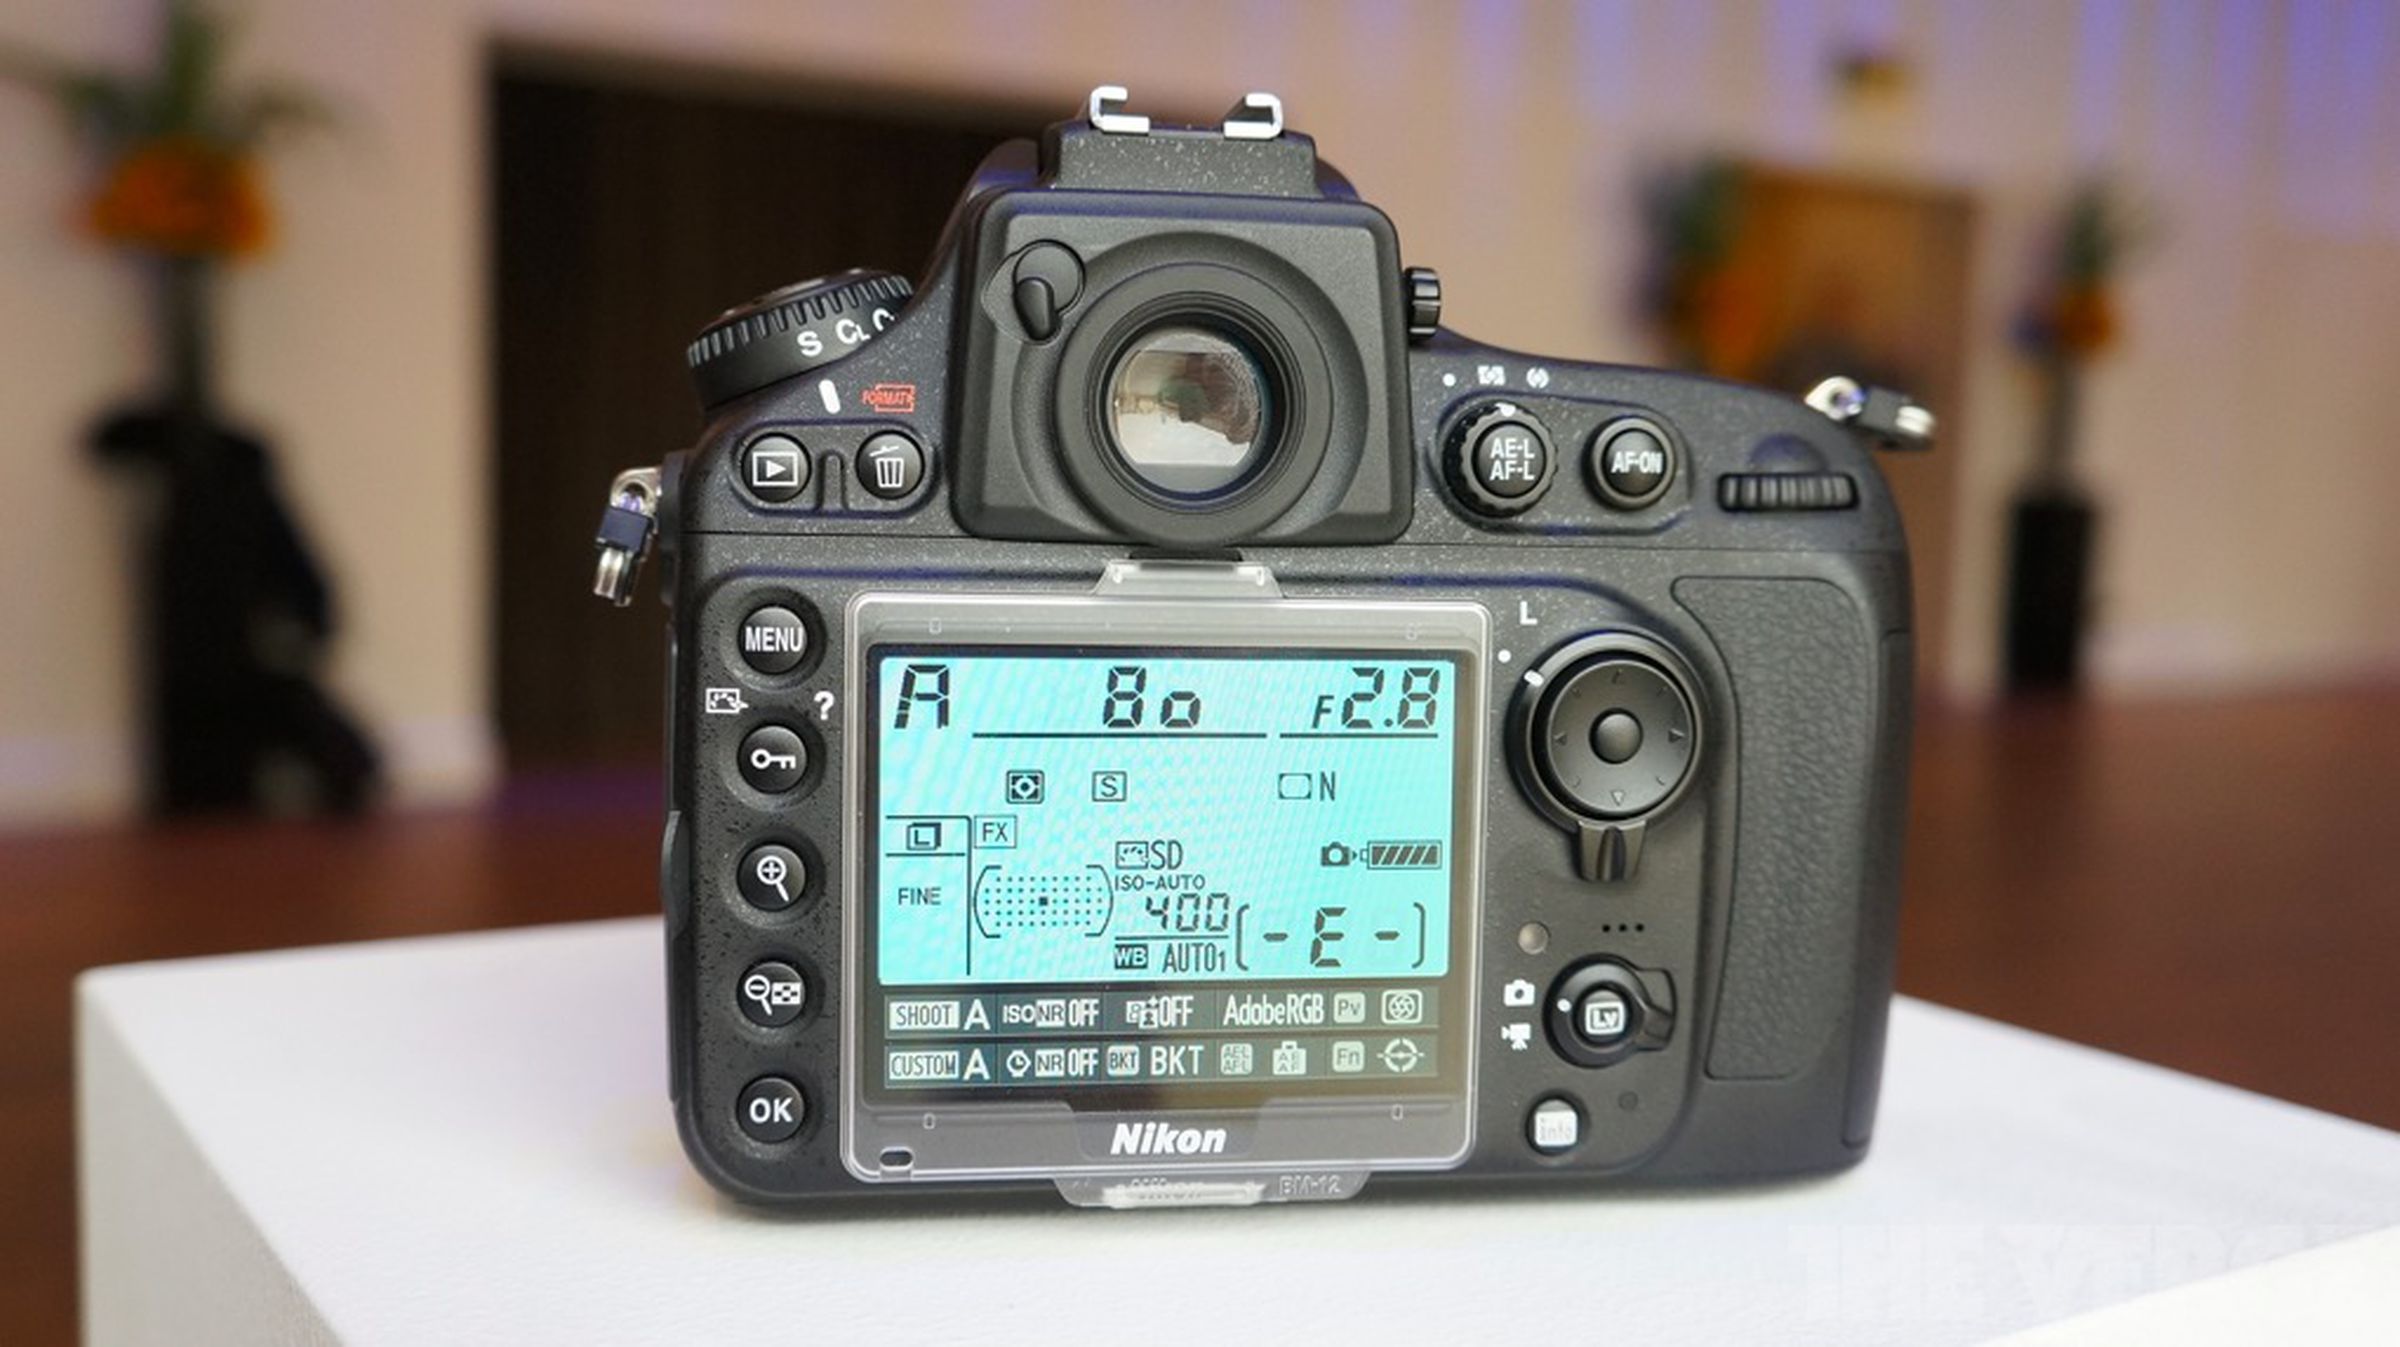 Nikon D800 hands-on photos